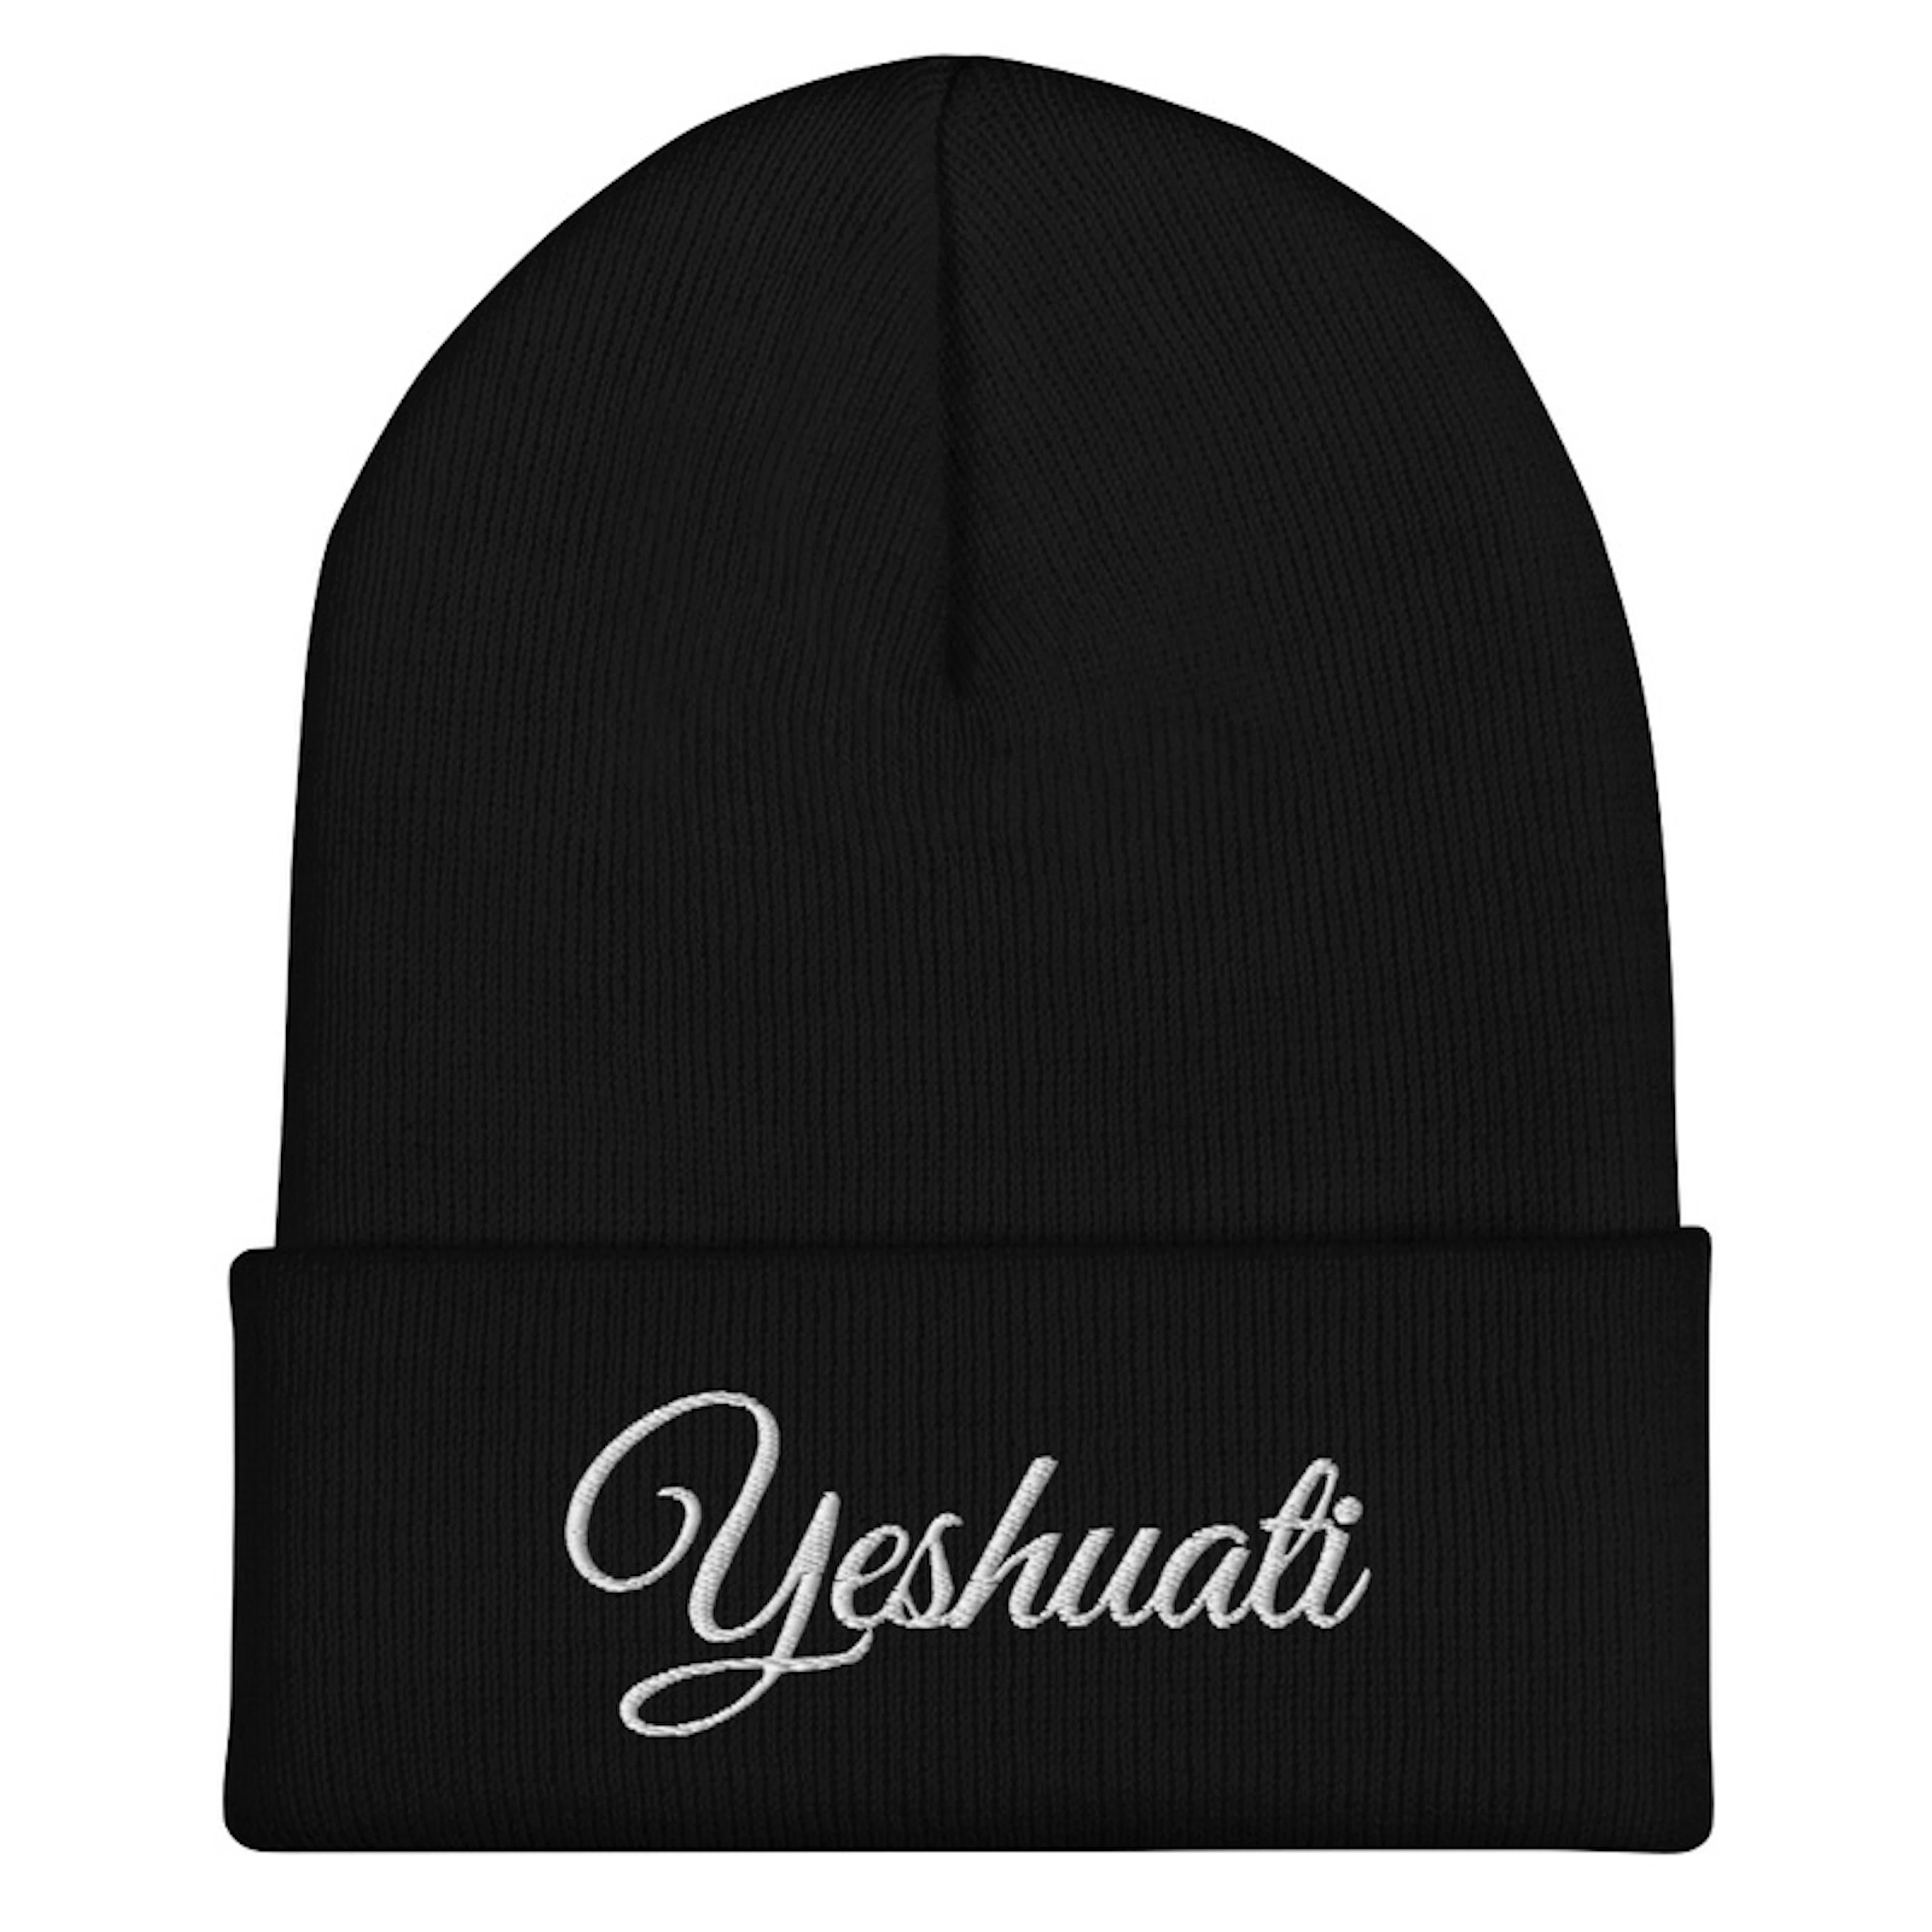 YESHUATI (My Salvation) Beanie  Hat